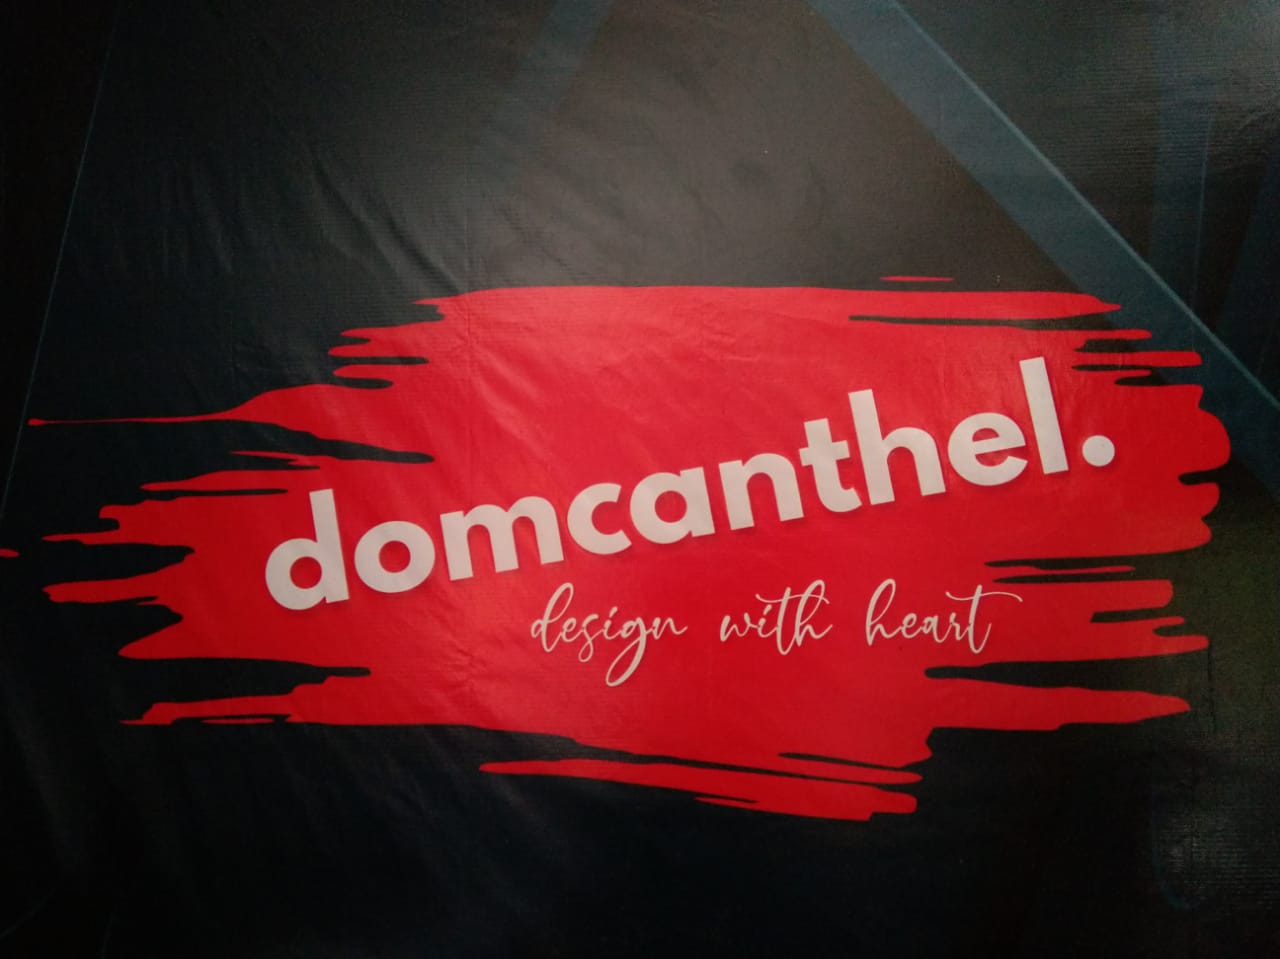 Domcanthel